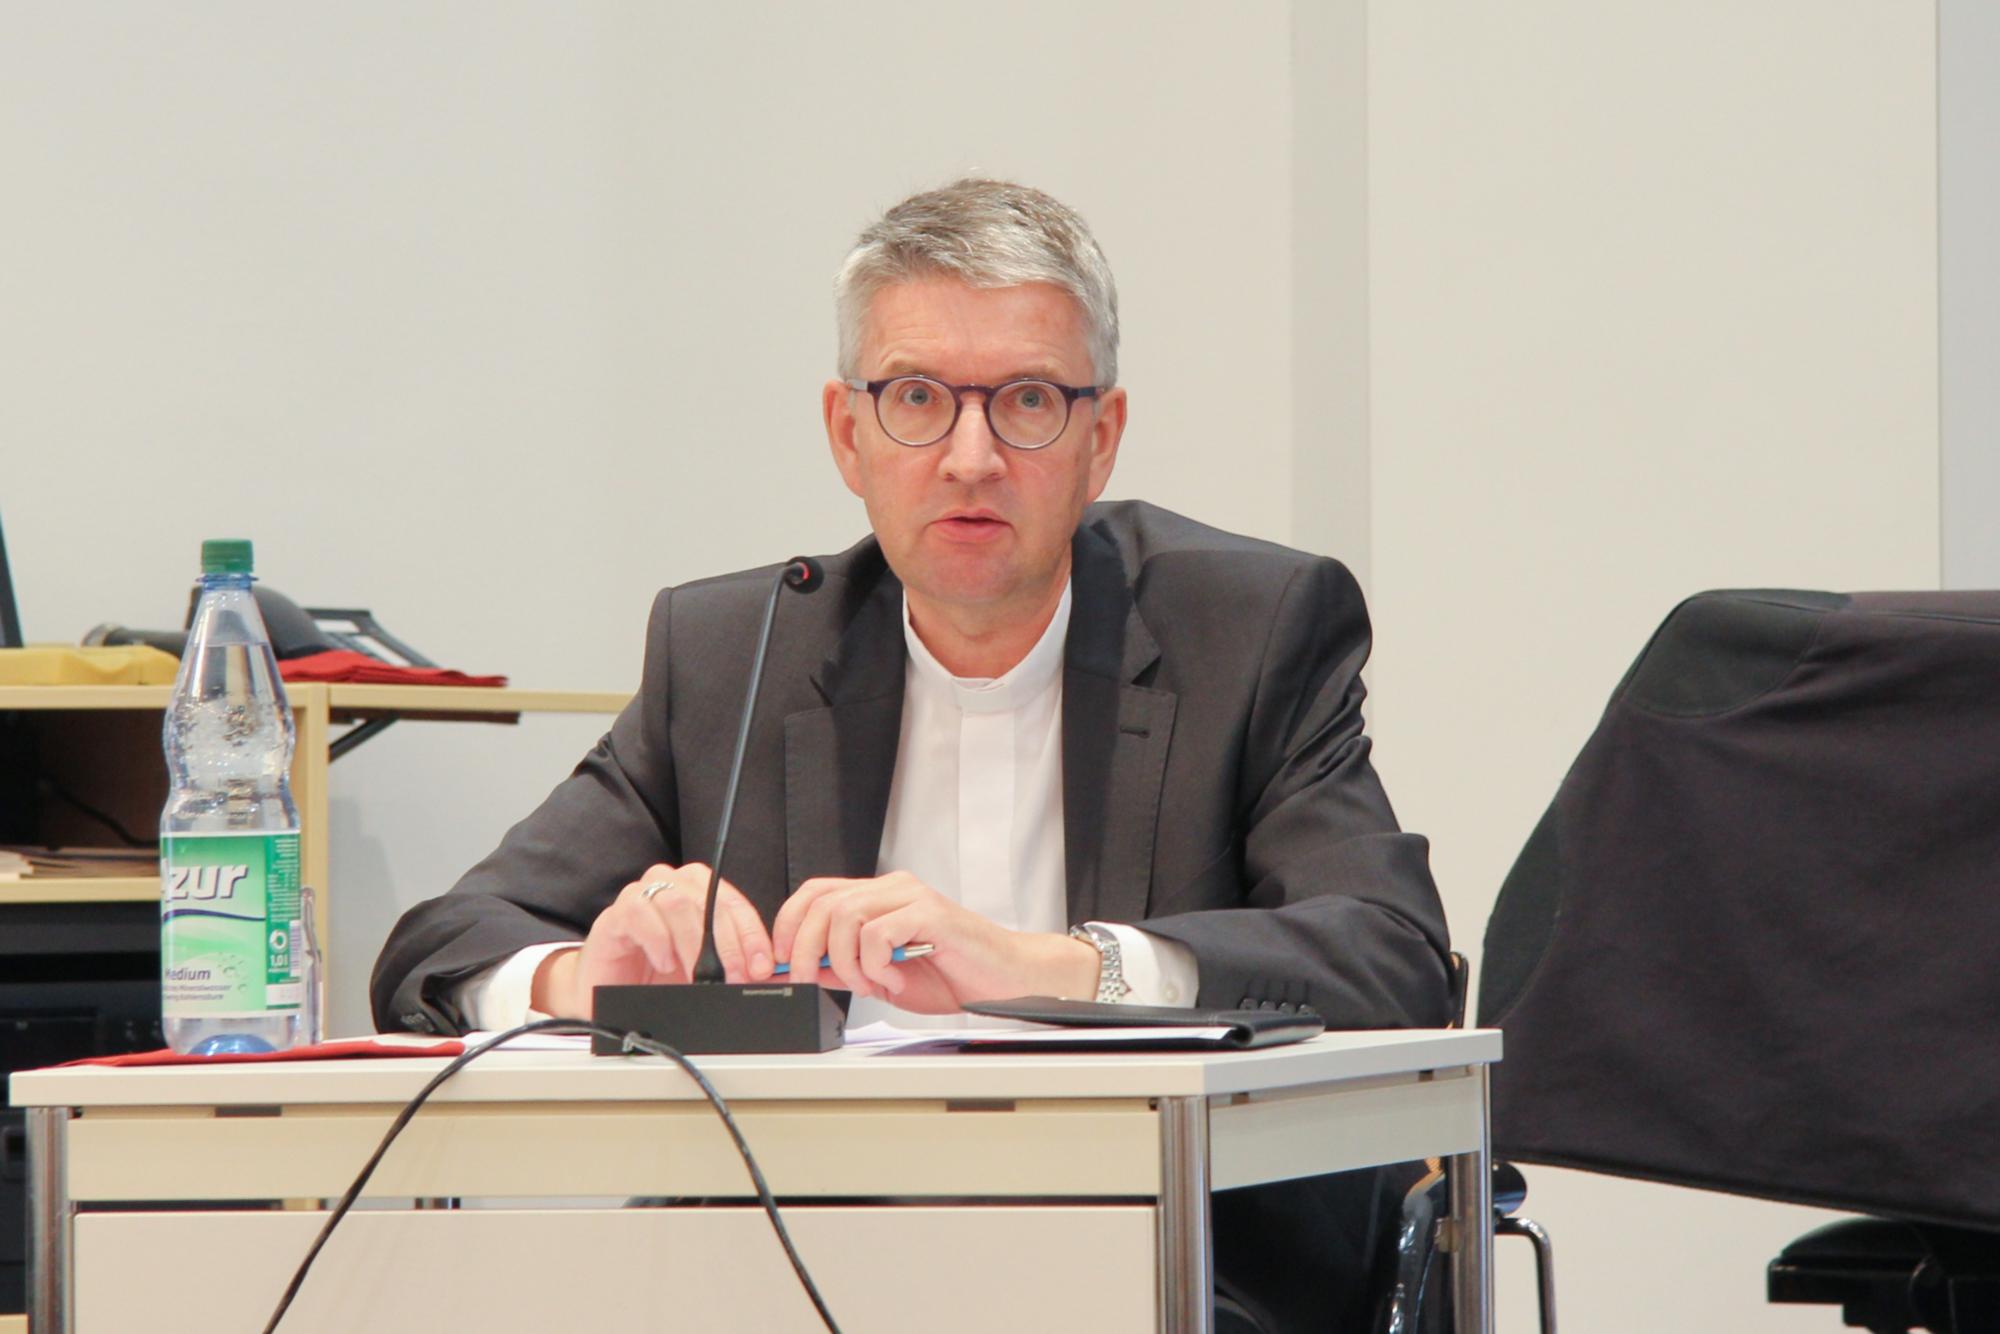 Bischof Kohlgraf bei der Pressekonferenz am 7 Oktober 2020 in Mainz (c) Bistum Mainz